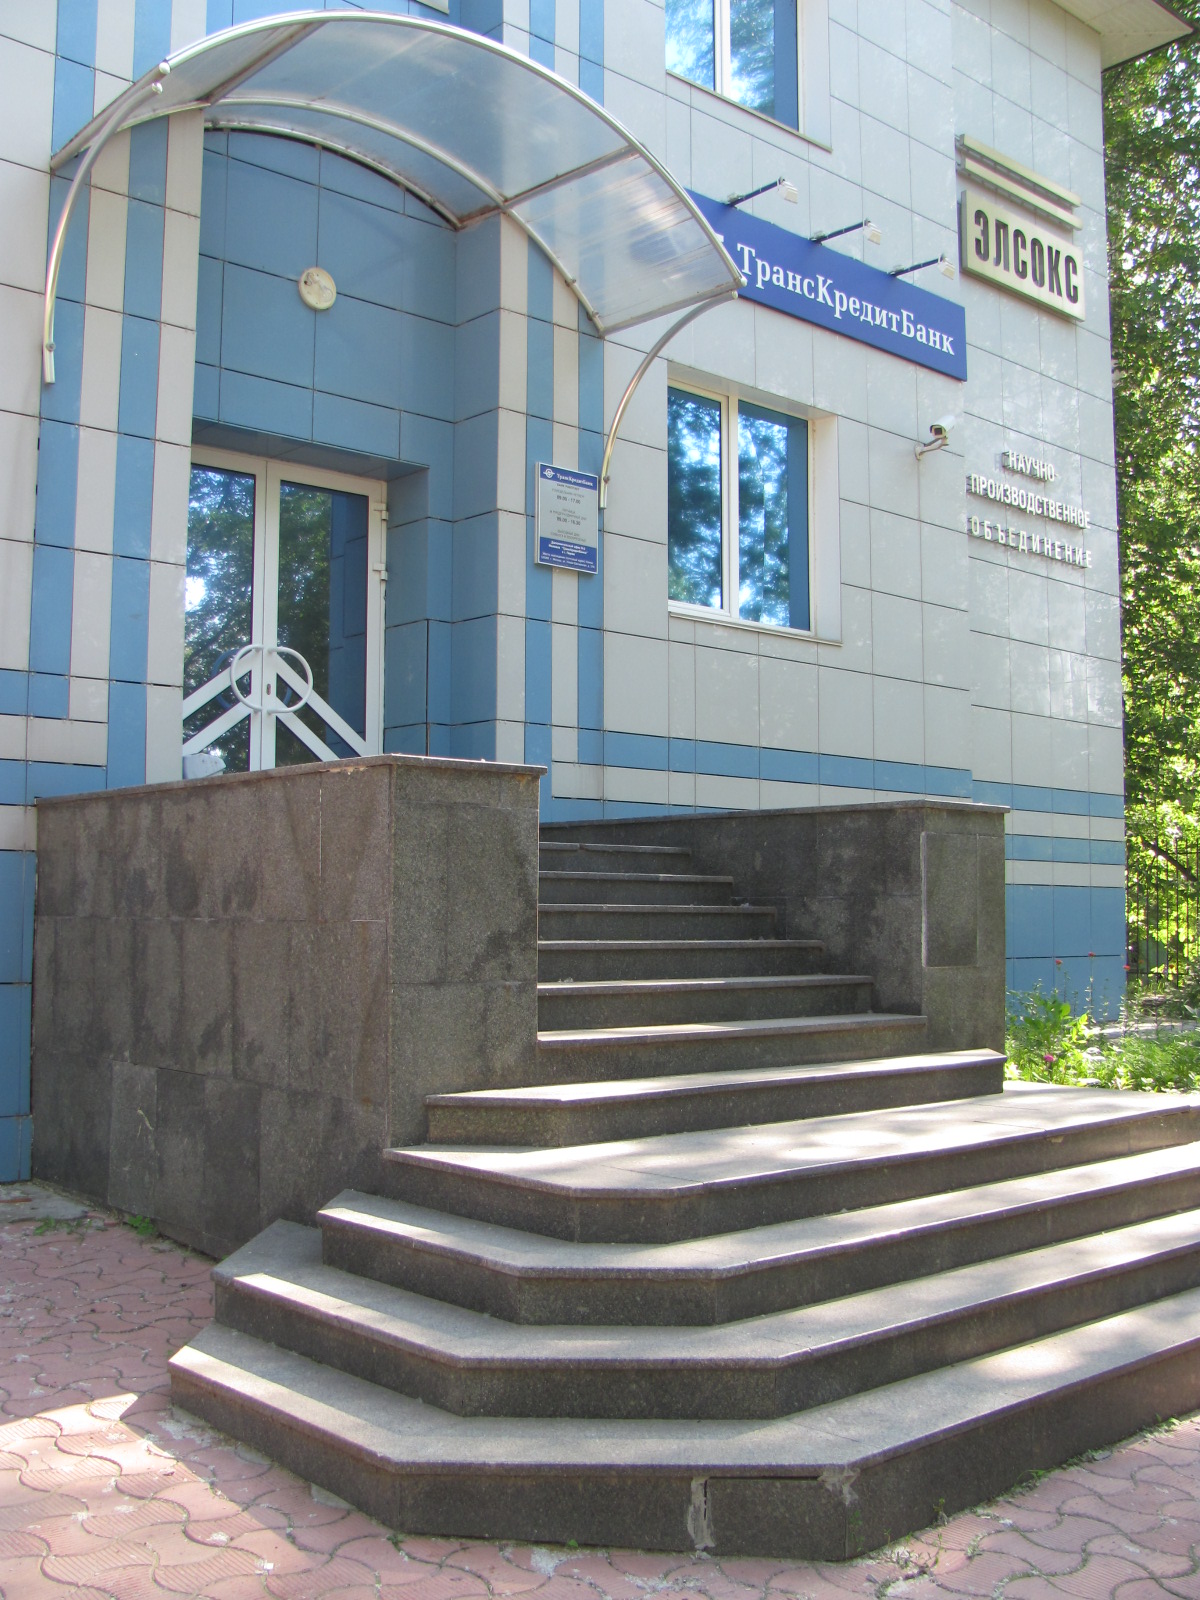 Продается здание в Дзержинском районе г. Перми